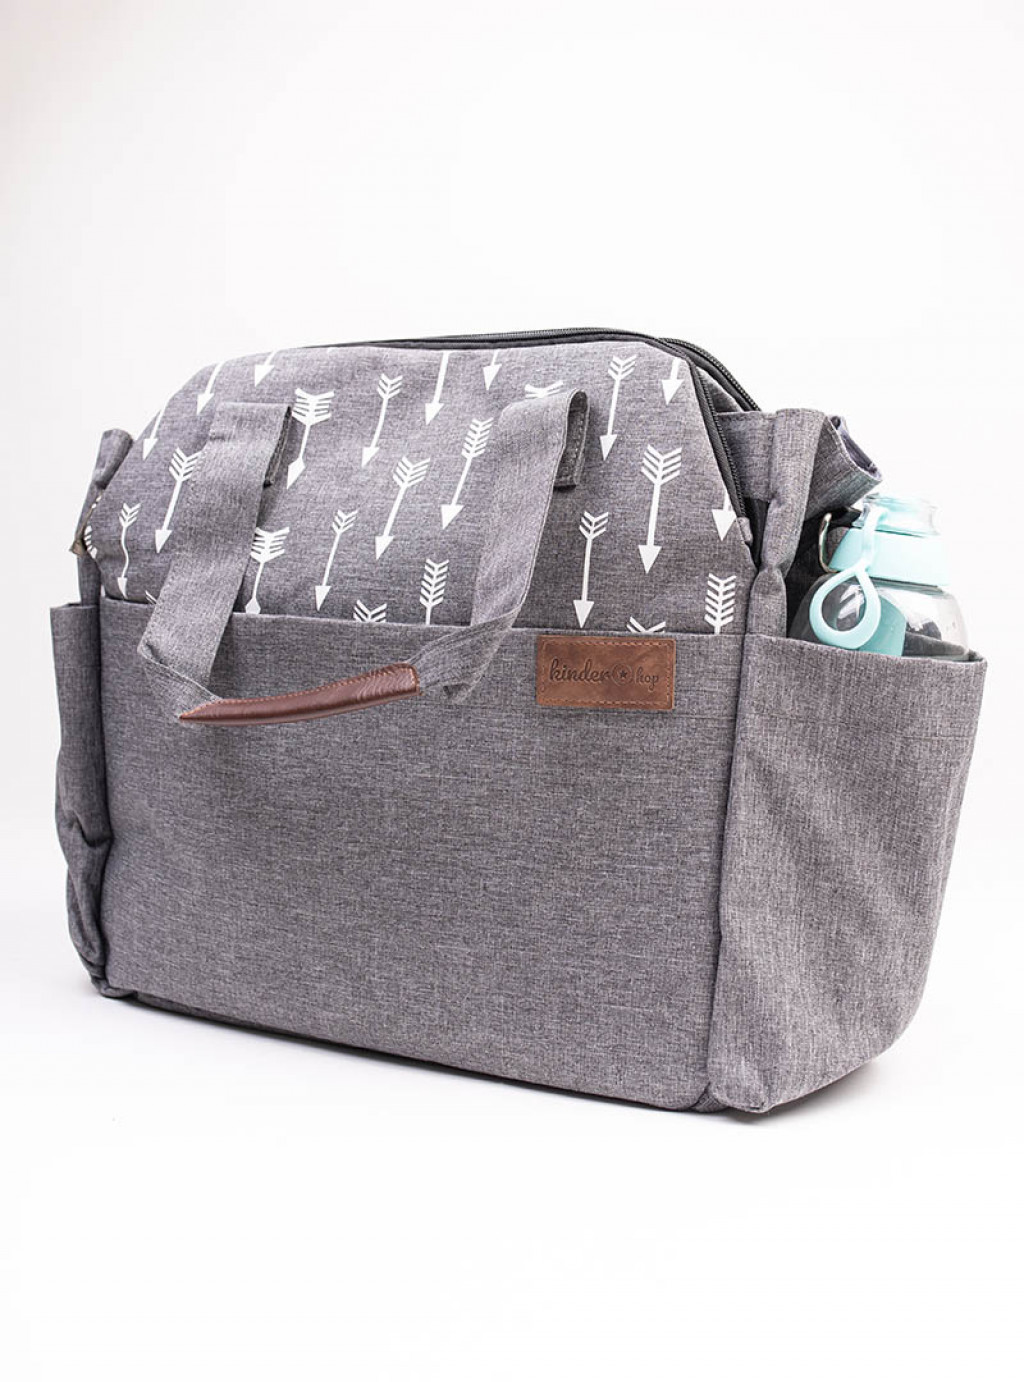 Kinder Hop Cestovná taška na kočík 2v1 Traveler Bag Space Gray